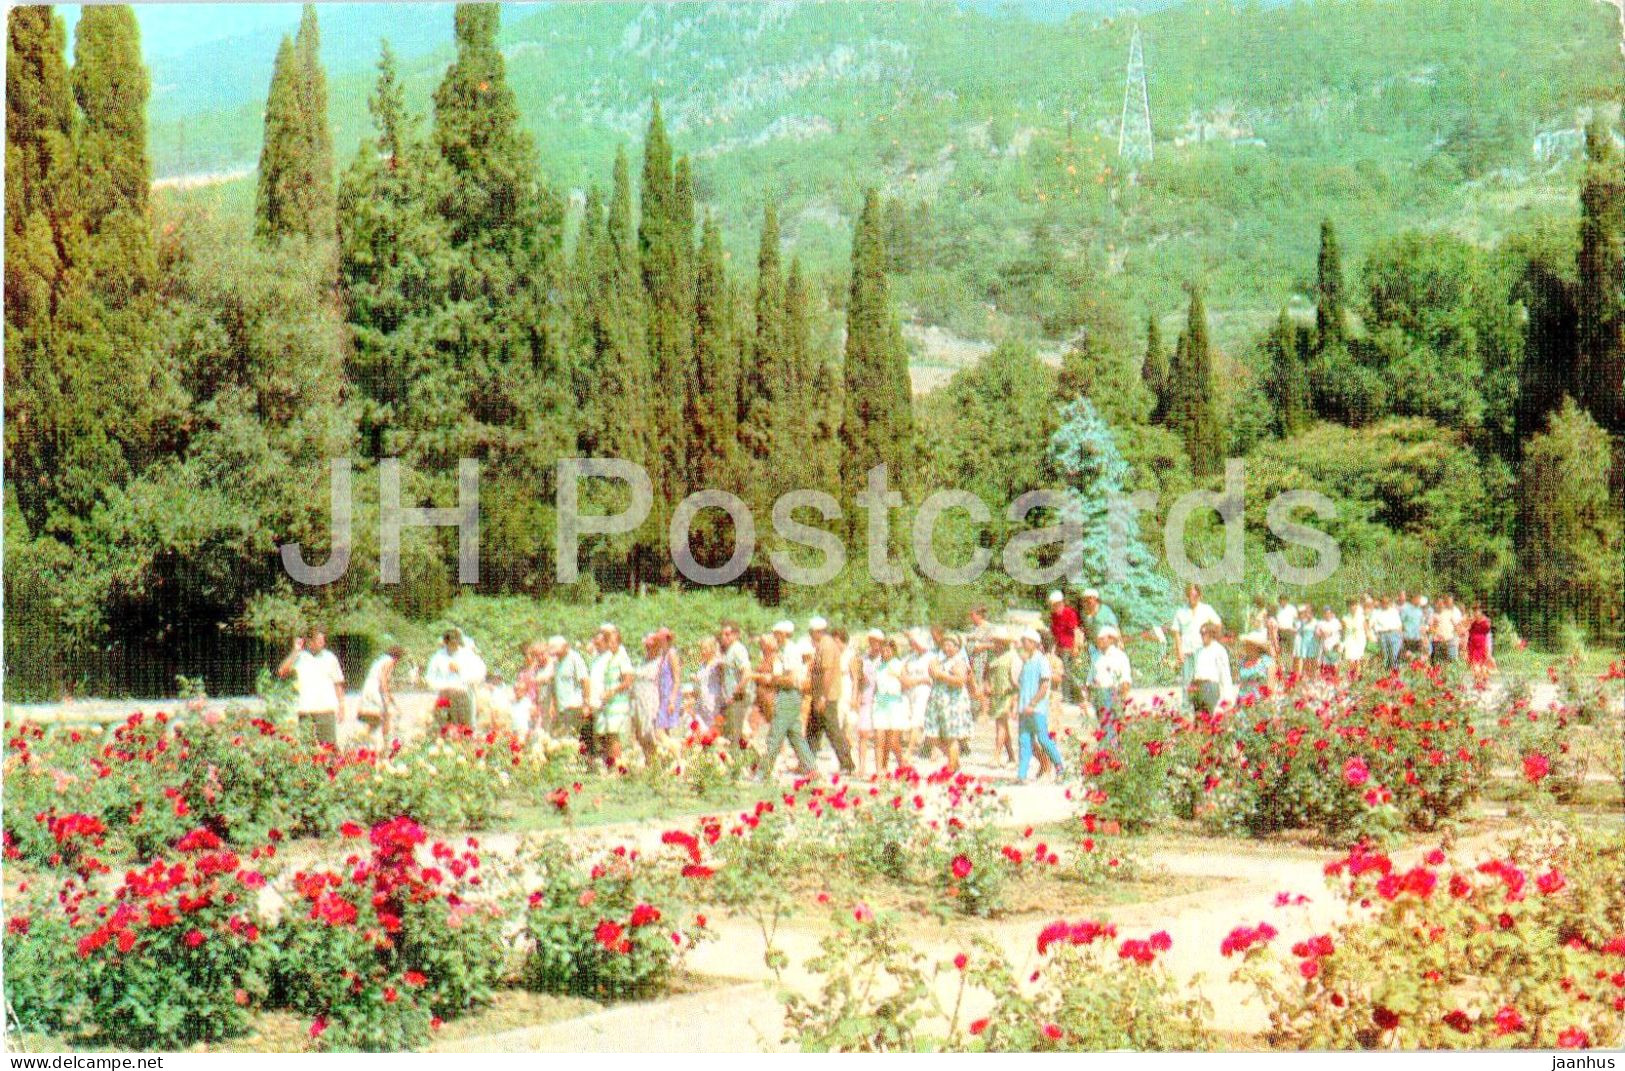 Nikitsky Botanical Garden - Roses In The Upper Park - Crimea - 1974 - Ukraine USSR - Unused - Ukraine